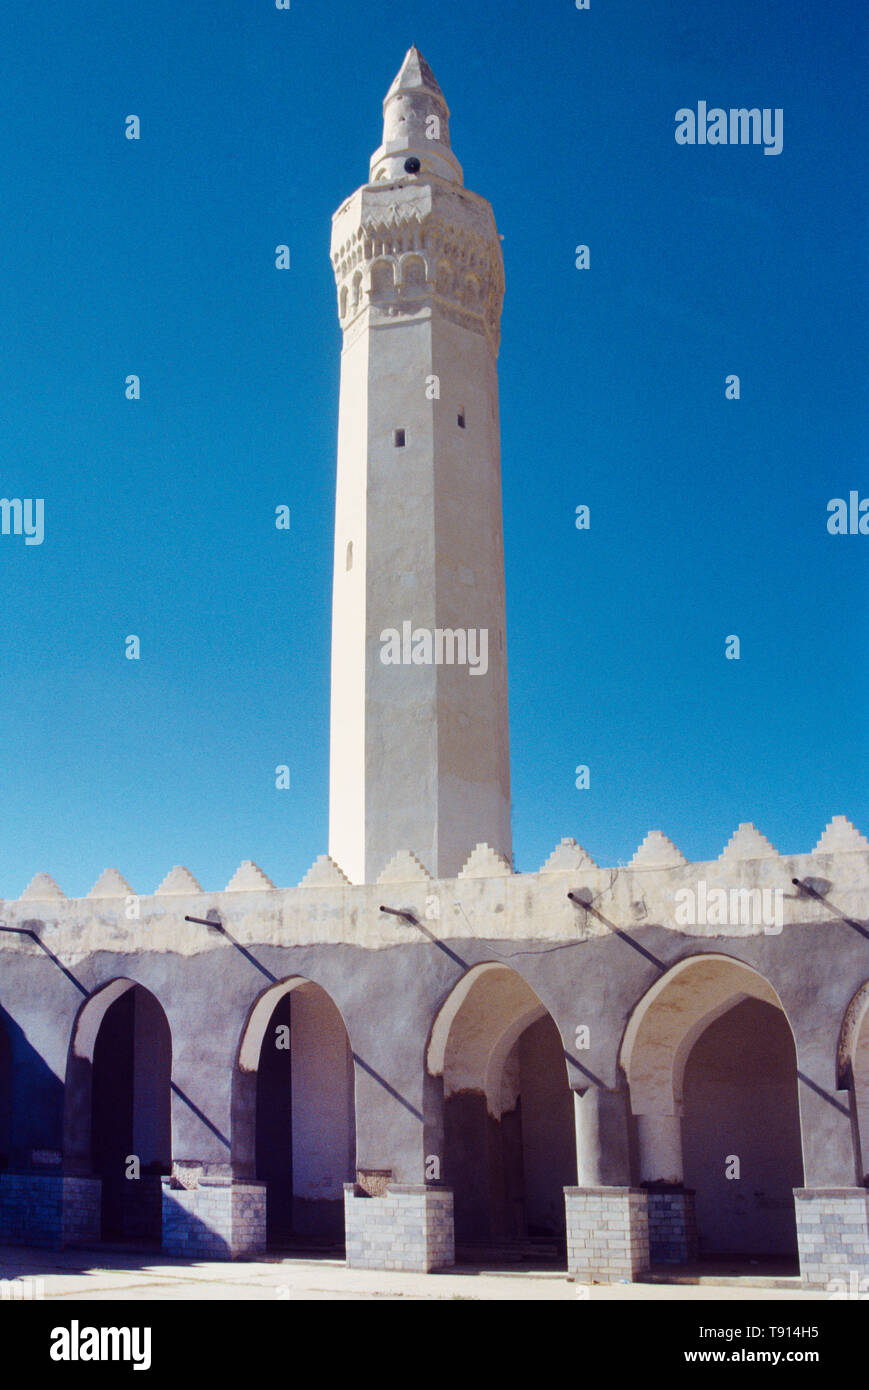 Die Taiz Jemen Al-Janad Moschee ist eine der ältesten noch erhaltenen und gilt als die erste Moschee im Jemen Stockfoto